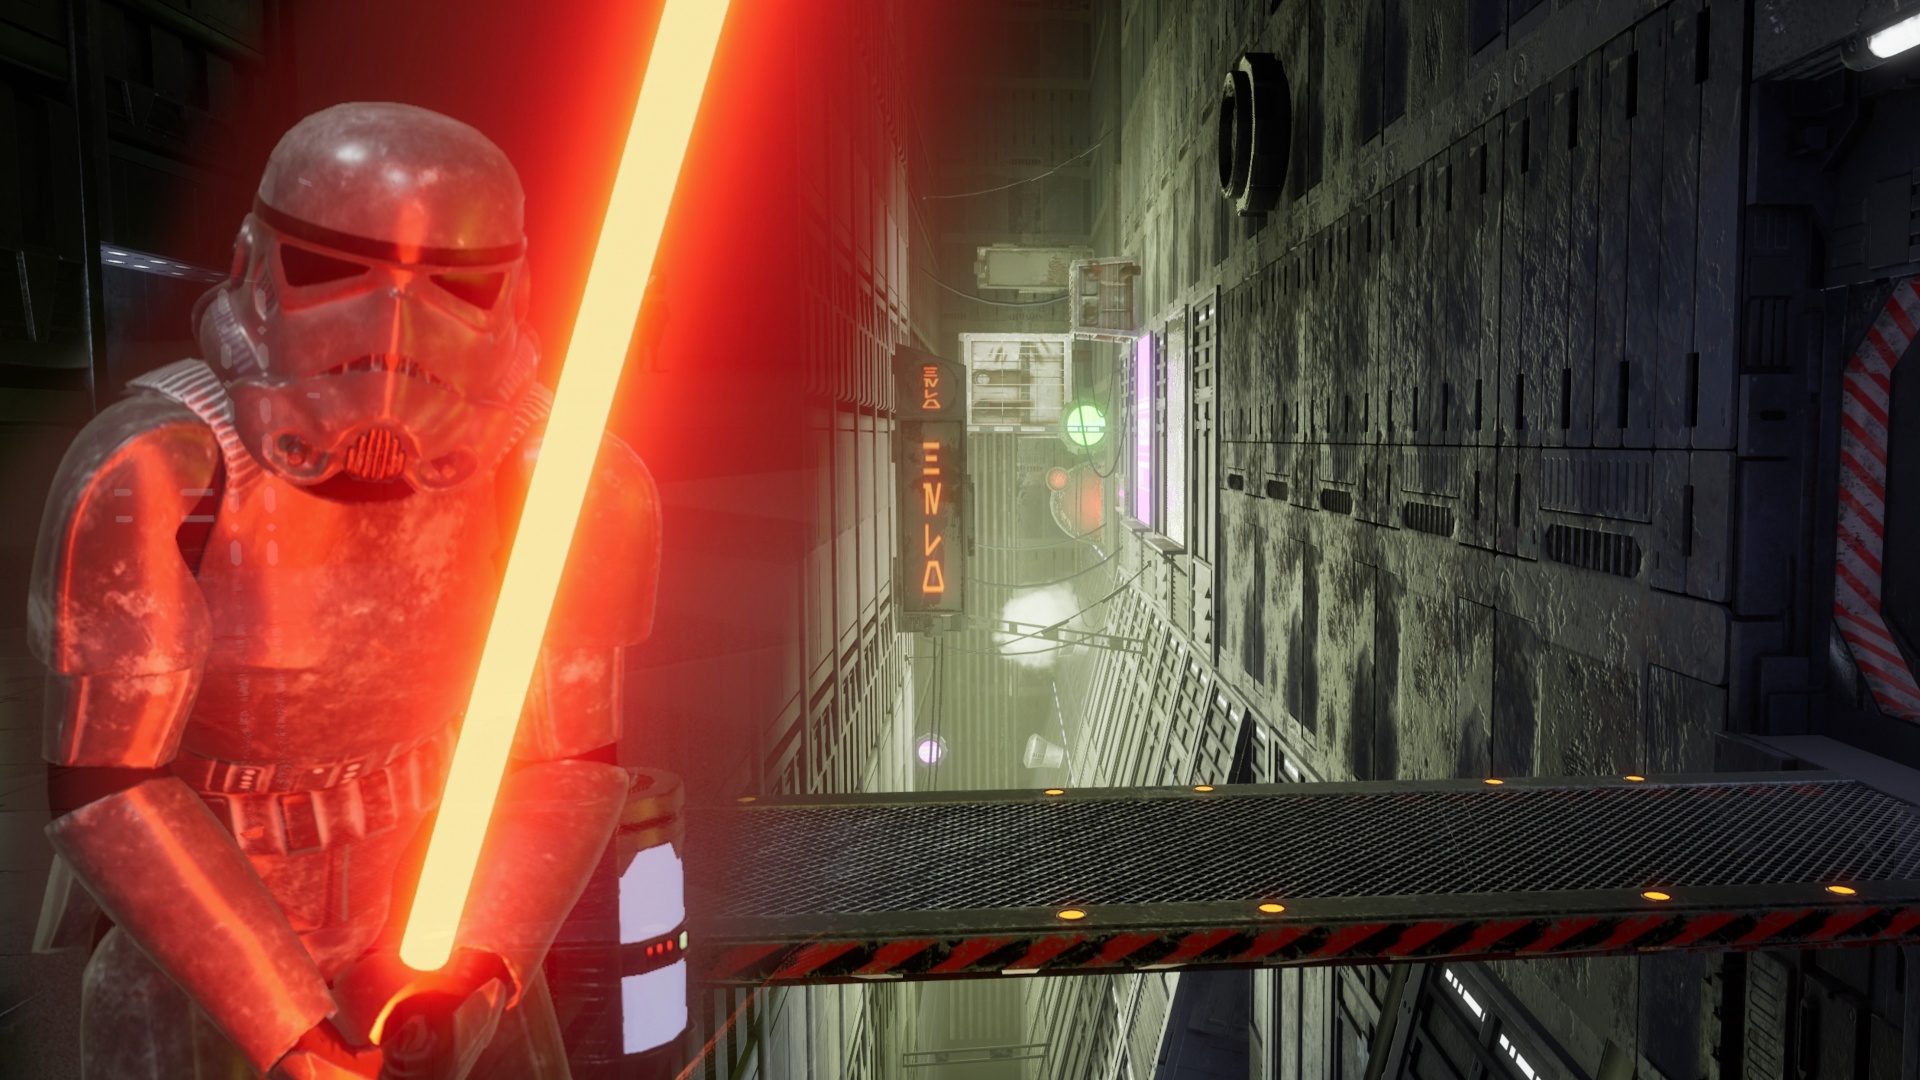 Star Wars in Unreal Engine 4: Dieses kostenlose Shooter-Remake erfüllt Fan-Träume